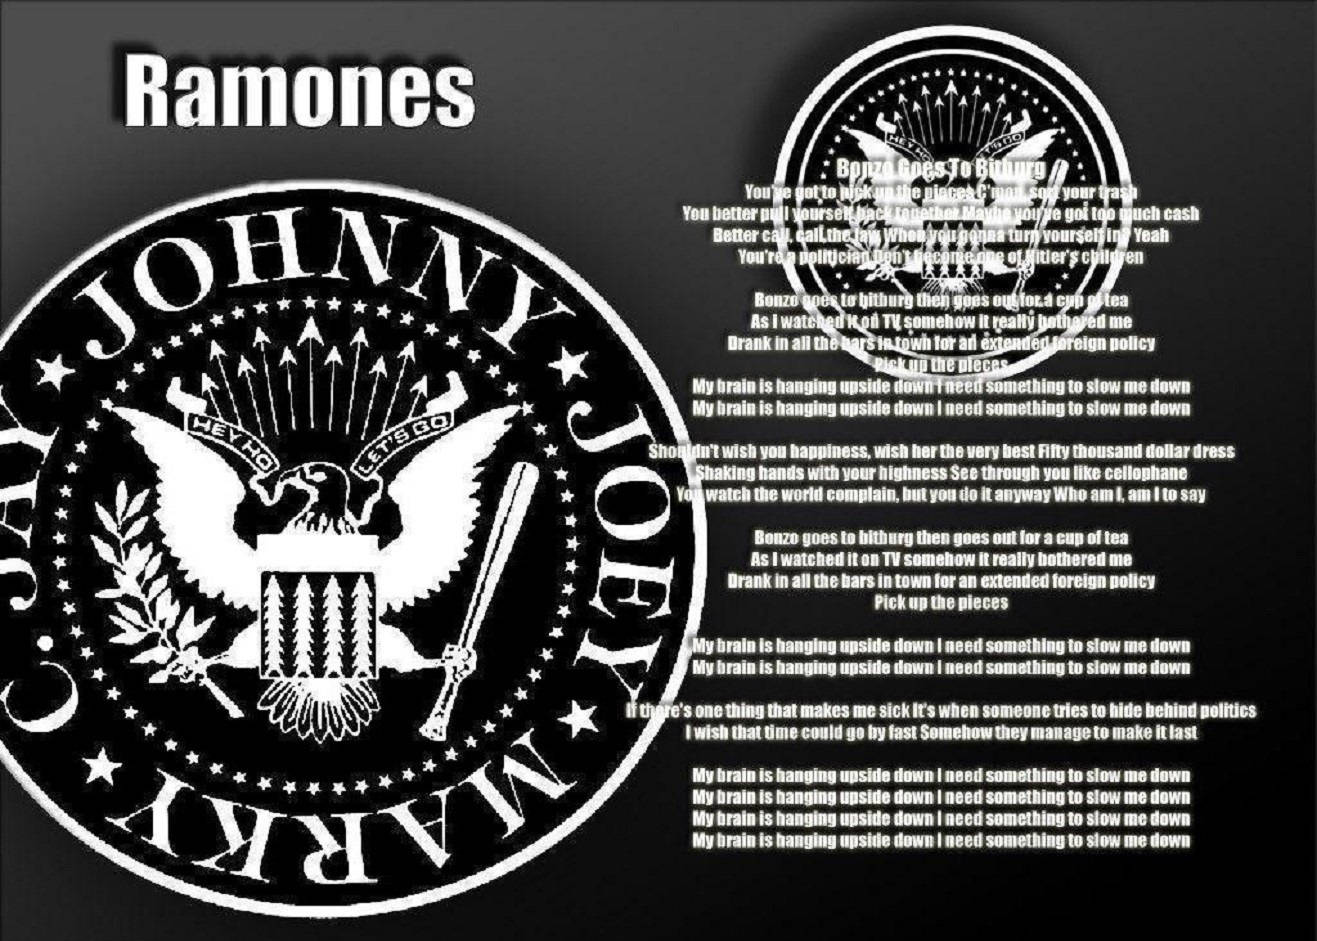 The Ramones Eagle With Bonzo Goes To Bitburg Lyrics Illustration Background